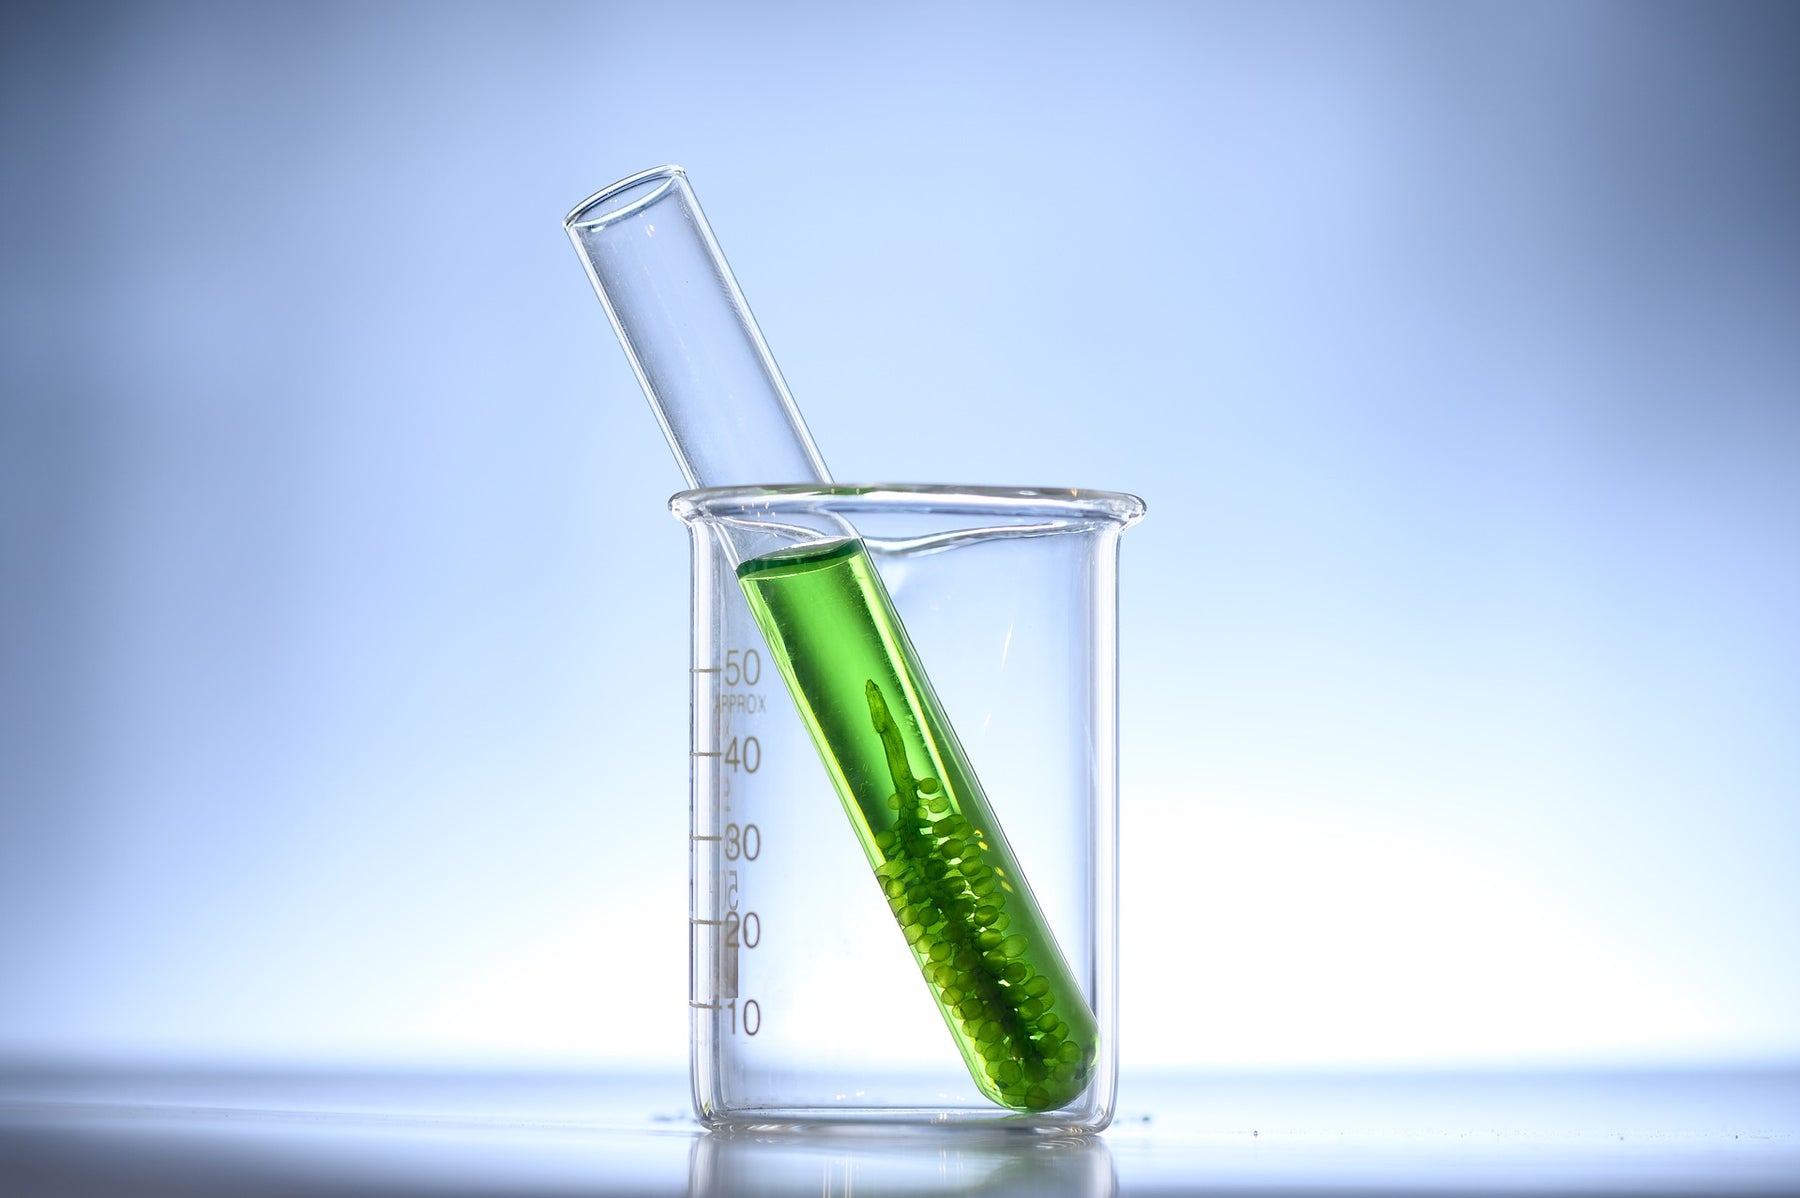 Recipient with green liquid into a glass recipient